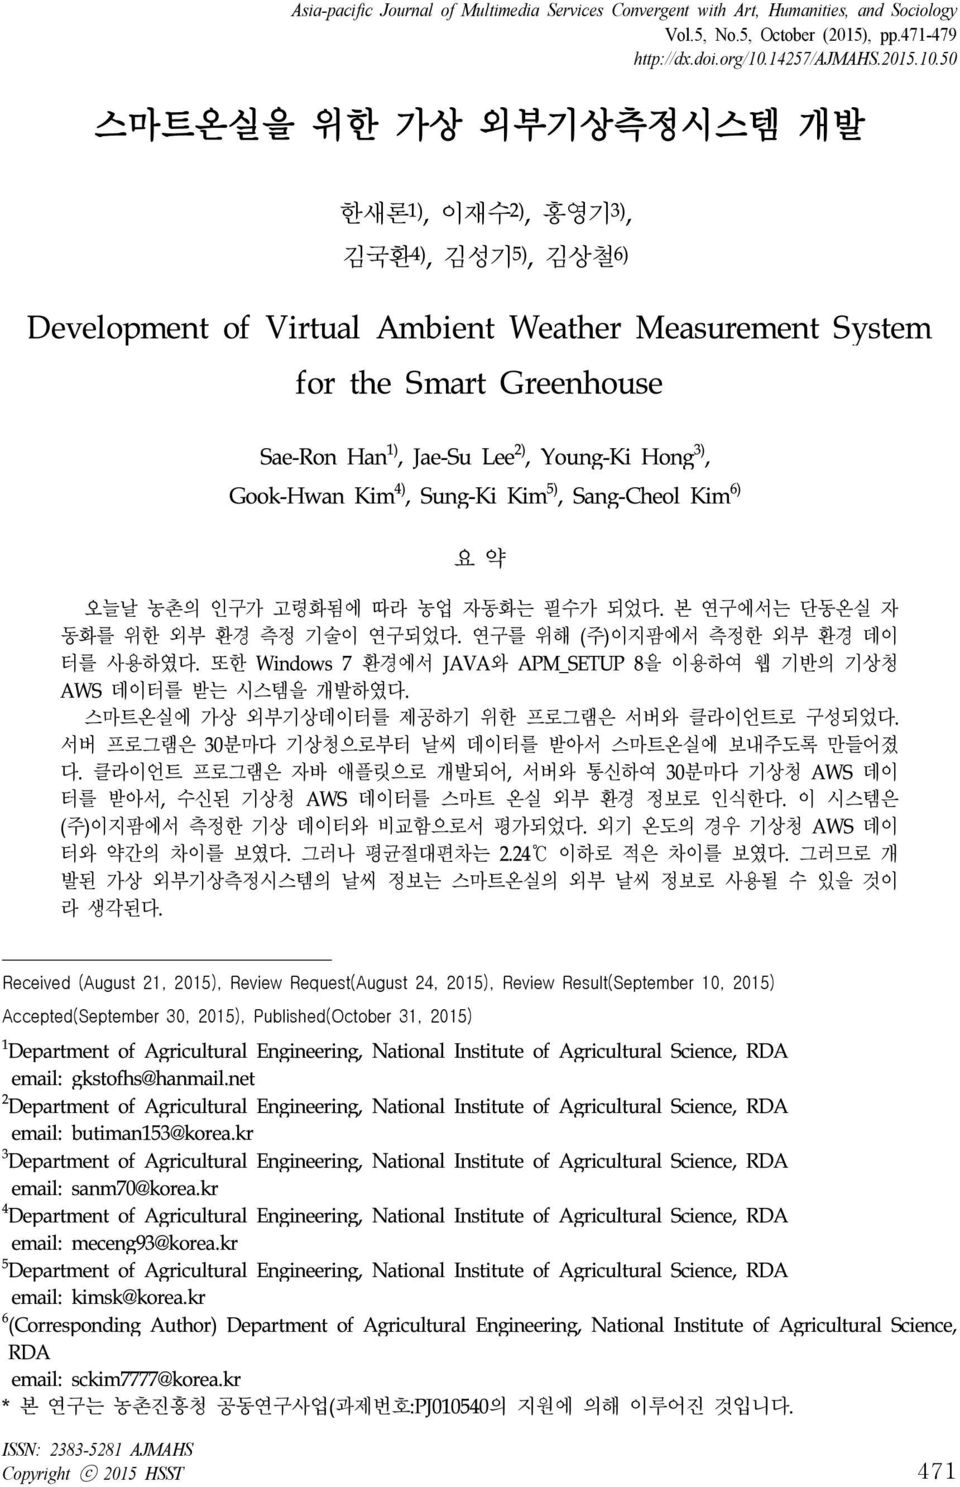 50 스마트온실을 위한 가상 외부기상측정시스템 개발 한새론 1), 이재수 2), 홍영기 3), 김국환 4), 김성기 5), 김상철 6) Development of Virtual Ambient Weather Measurement System Sae-Ron Han 1), Jae-Su Lee 2), Young-Ki Hong 3), Gook-Hwan Kim